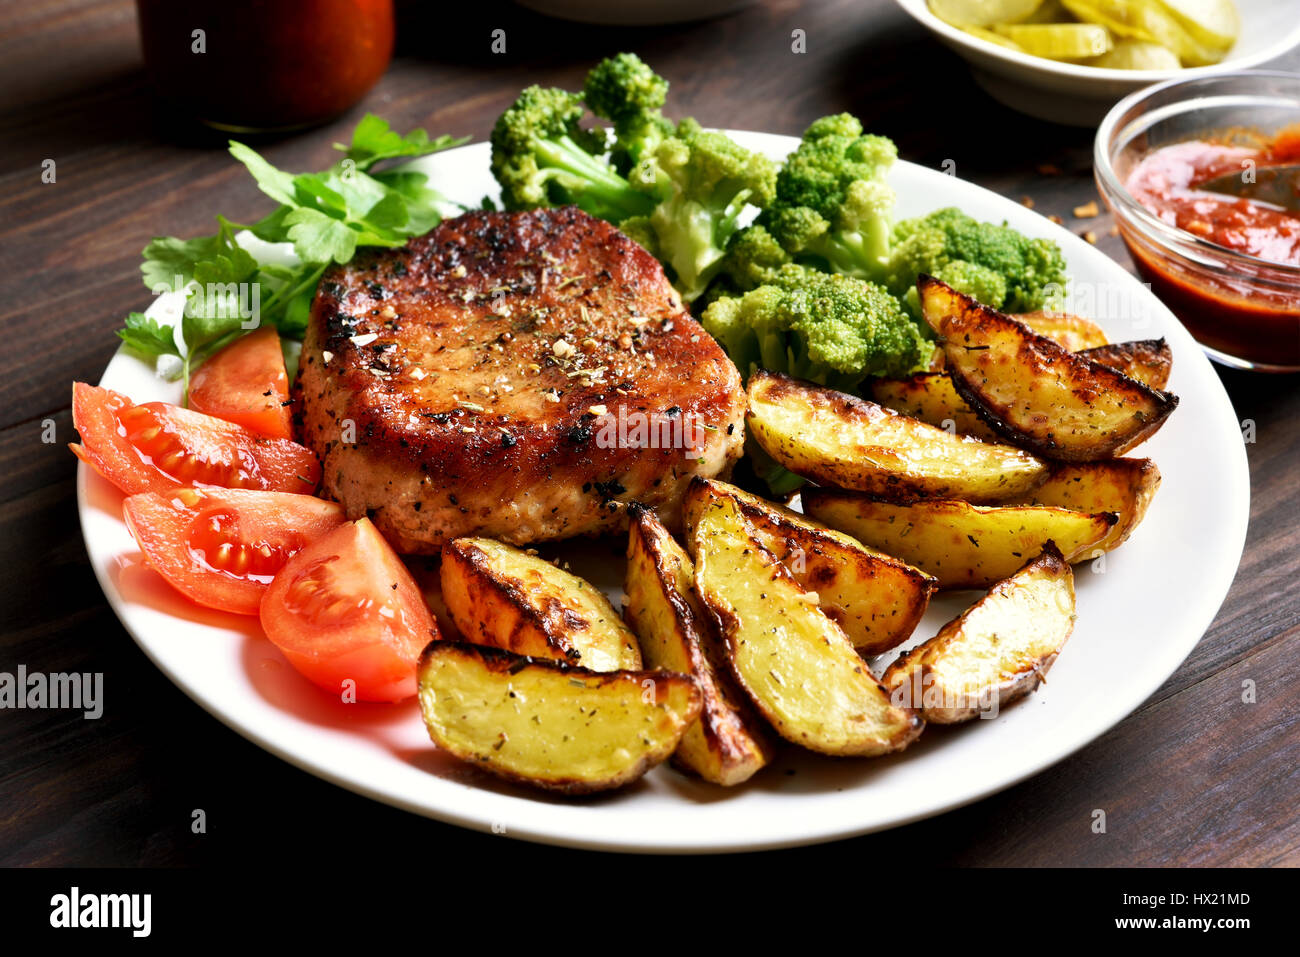 Piatto per la cena con grigliate di carne e verdure sulla piastra, vista ravvicinata Foto Stock